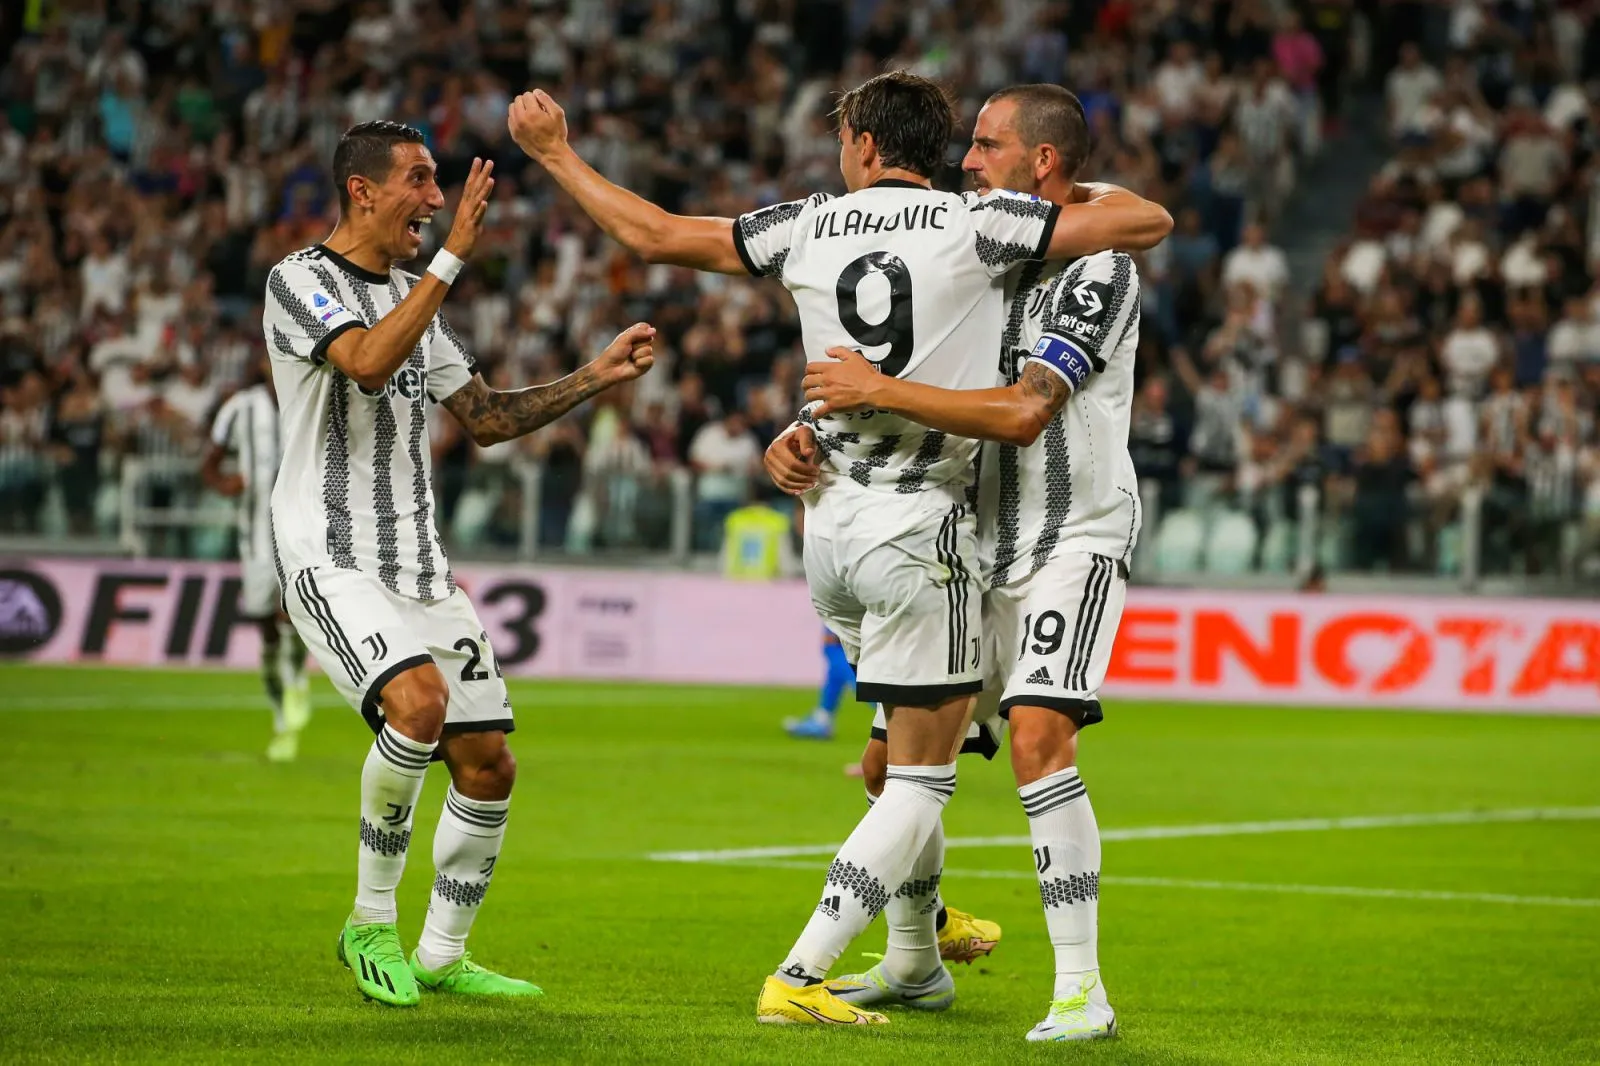 Pronostic Salernitana Juventus : analyse, cotes et prono du match de Serie A